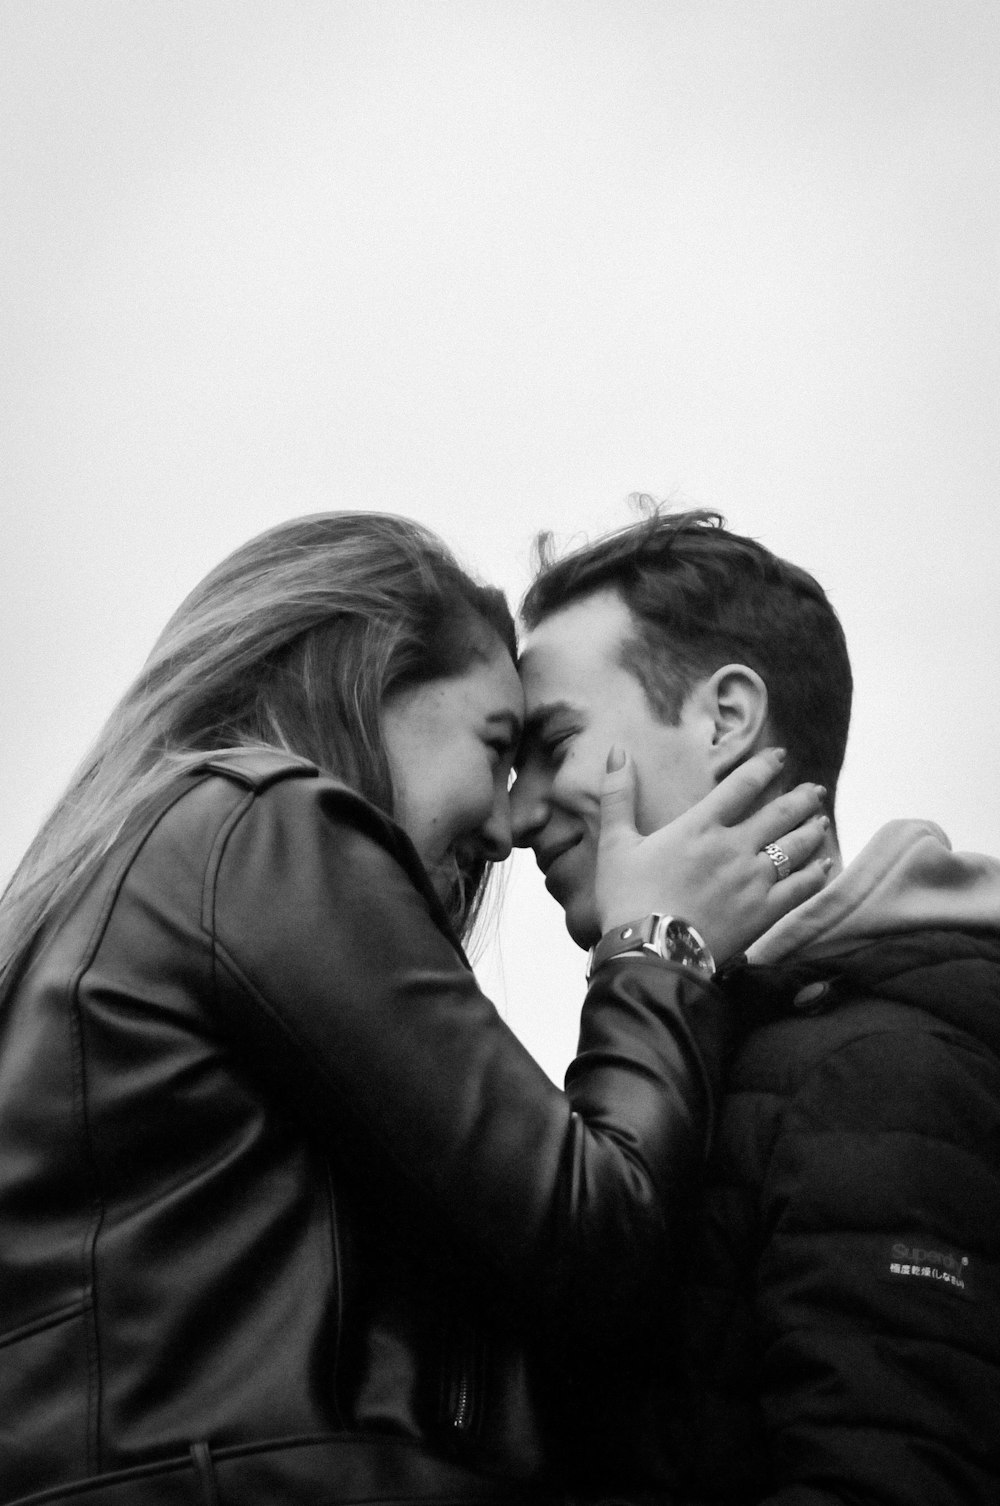 女性の額にキスをする男性の写真 Unsplashで見つけるオランダの無料写真